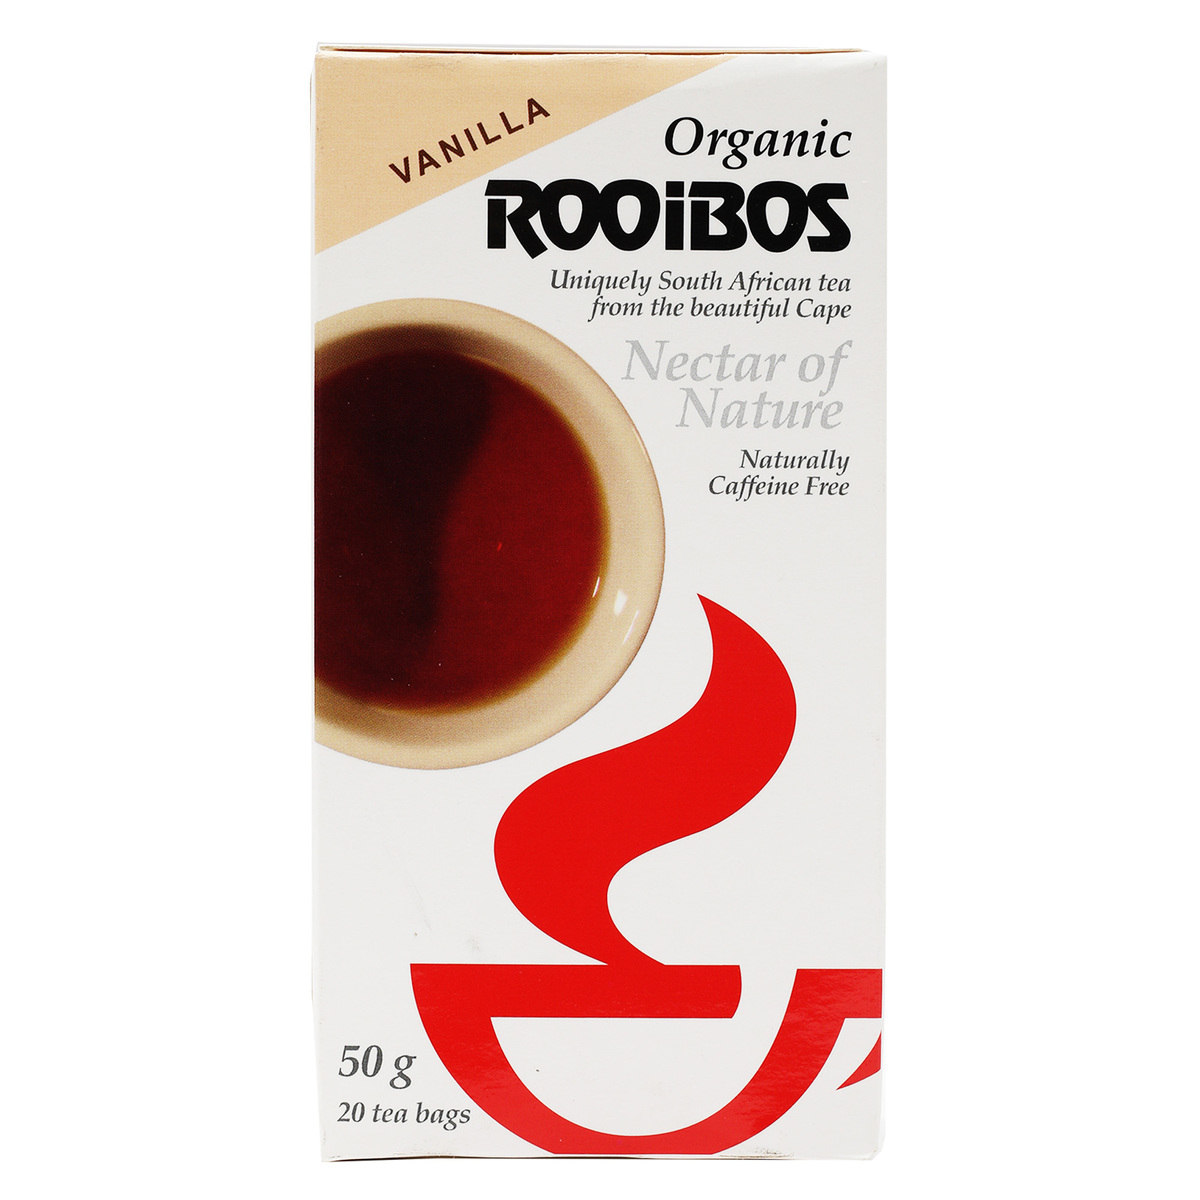 أورجانيك رويبوس شاي المريمية بنكهة الفانيليا 20 كيس شاي